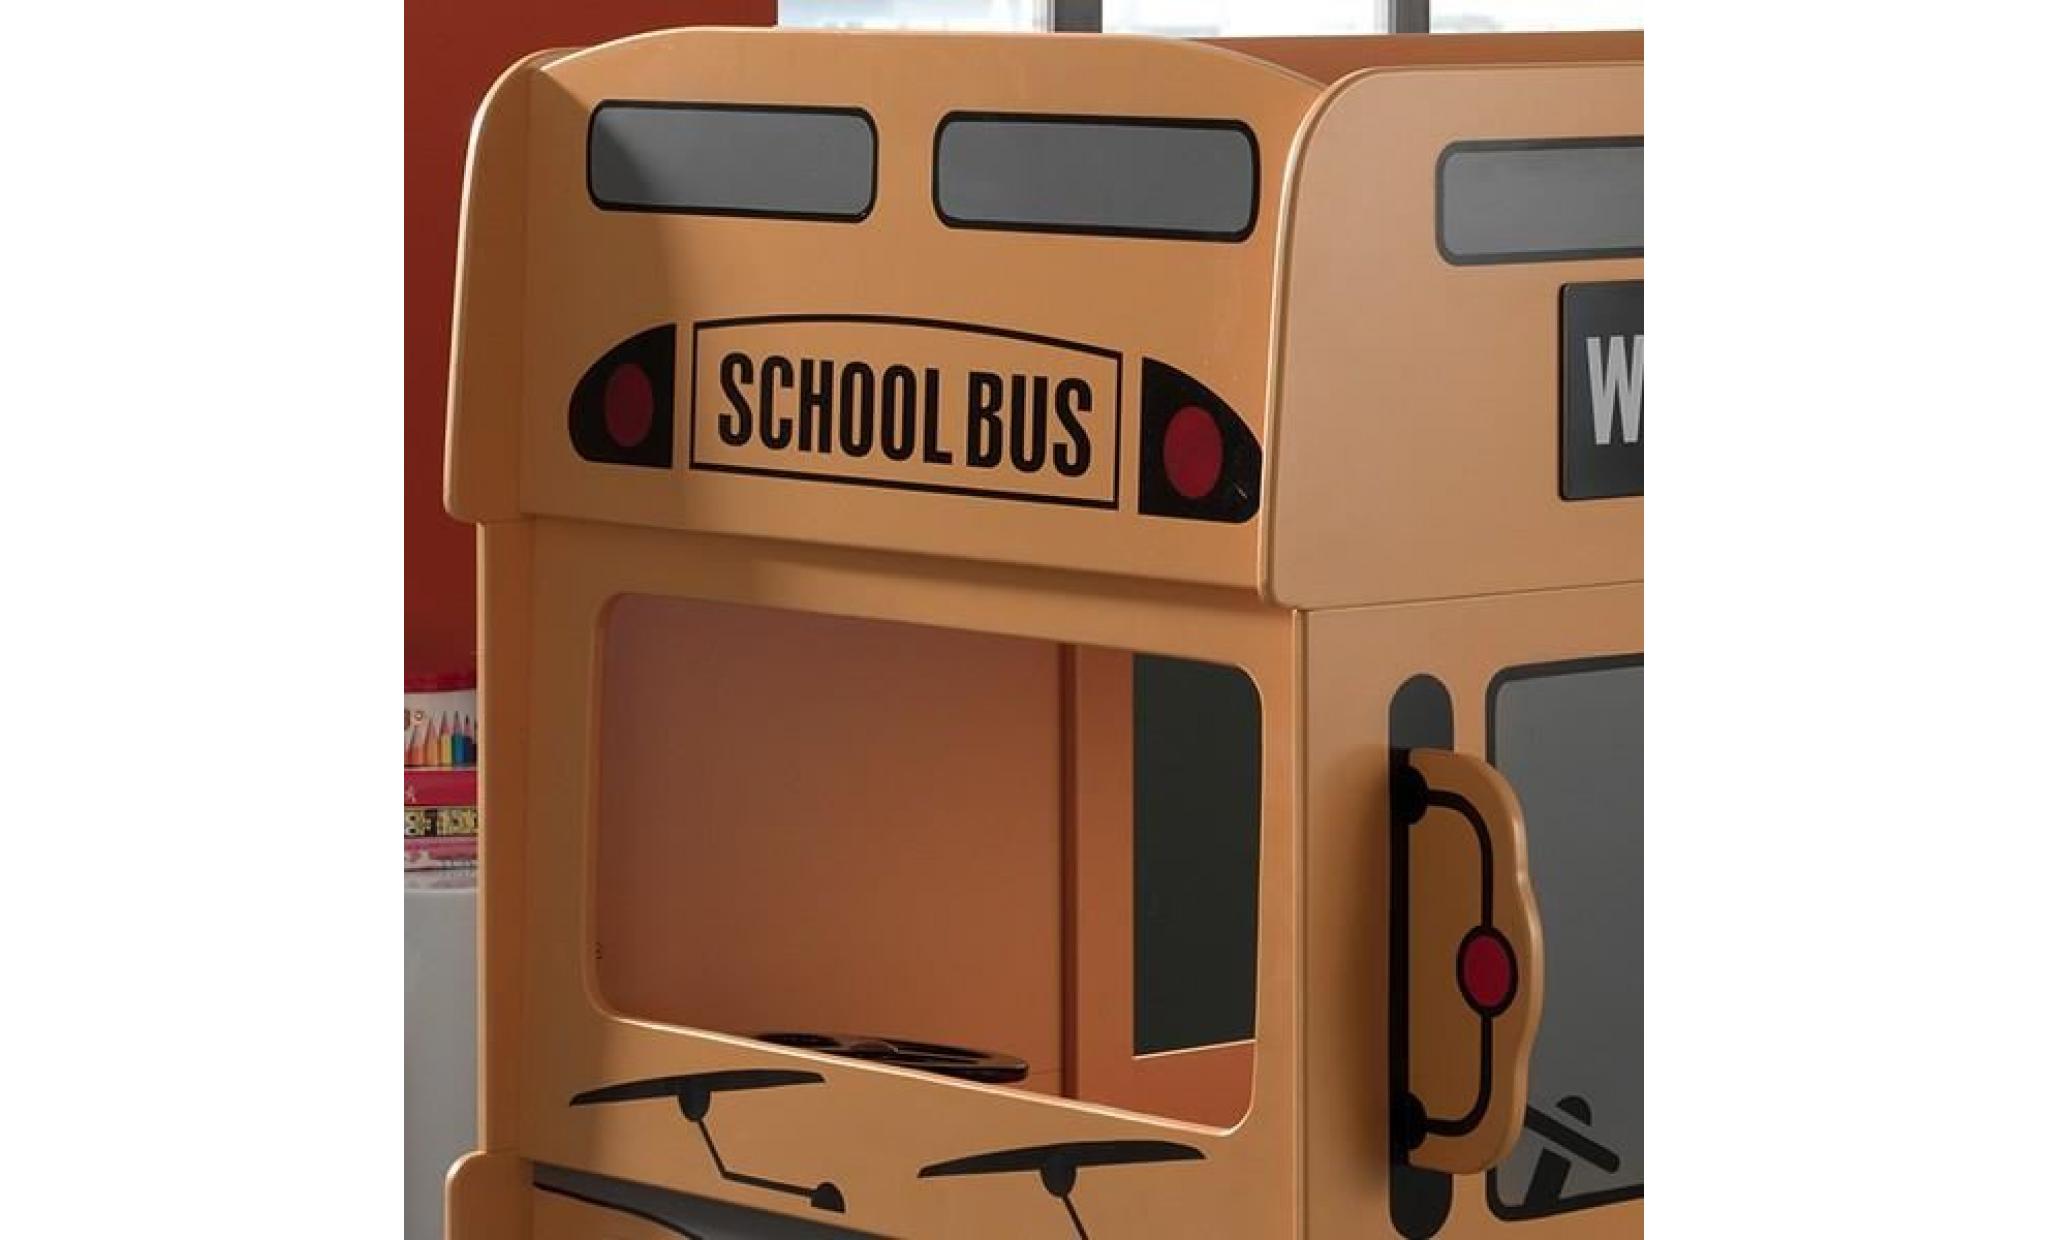 Lit superposé bus - SCHOOL - L 215 x l 100 x H 132 cm pas cher